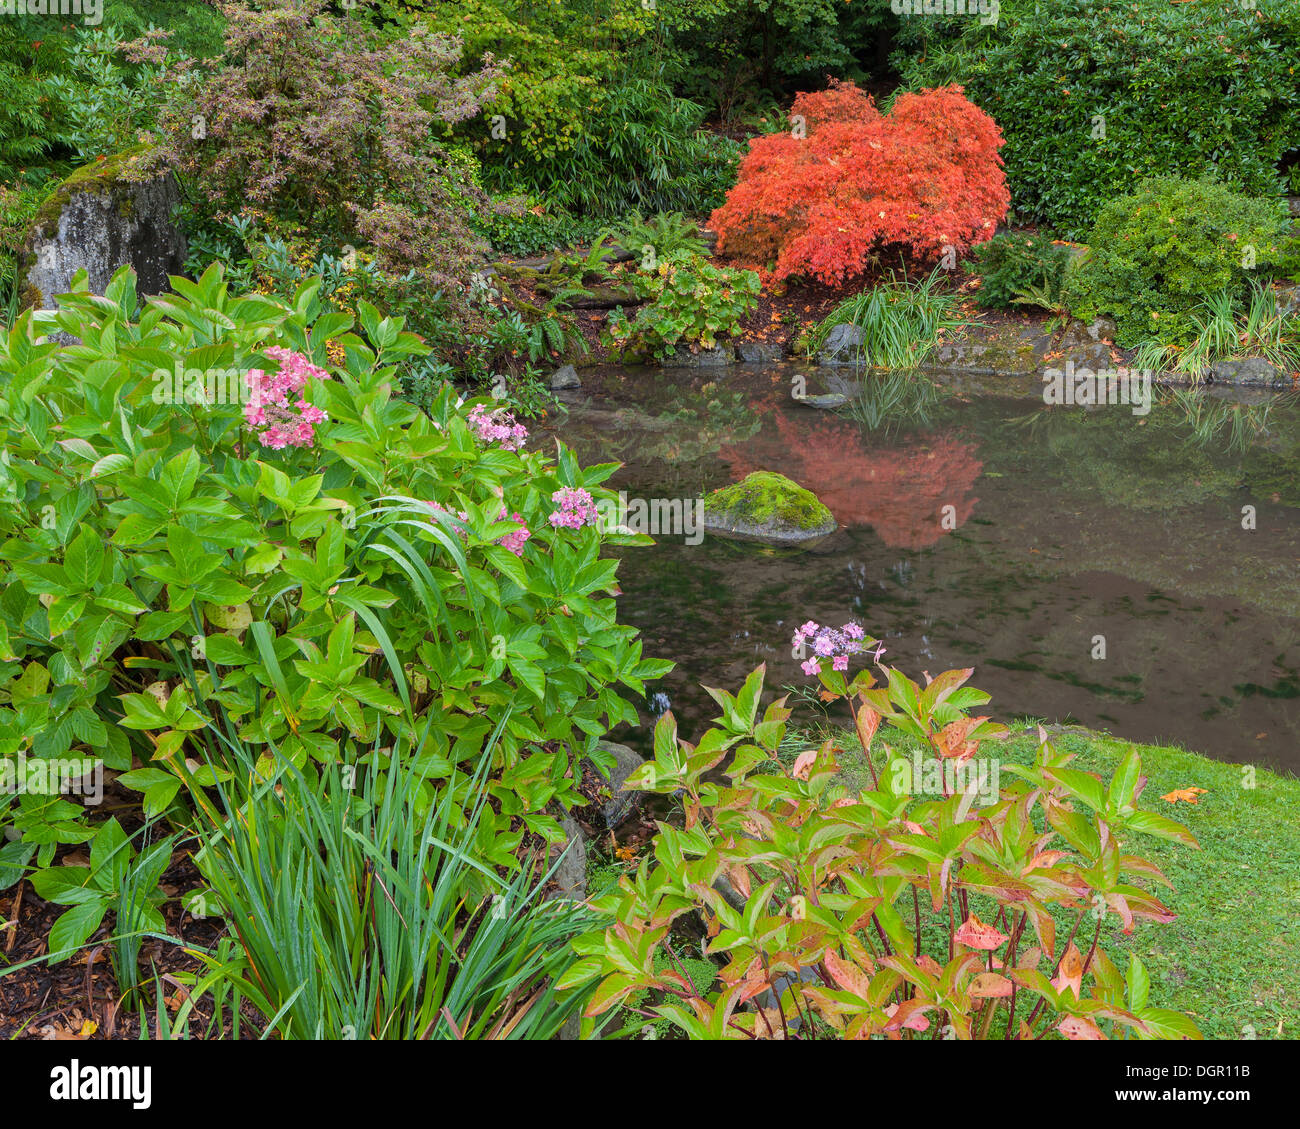 Kubota-Garten, Seattle, WA: Ein kleiner Teich beringt mit Sträuchern wie Hortensien und ein japanischer Ahorn im Herbst Stockfoto